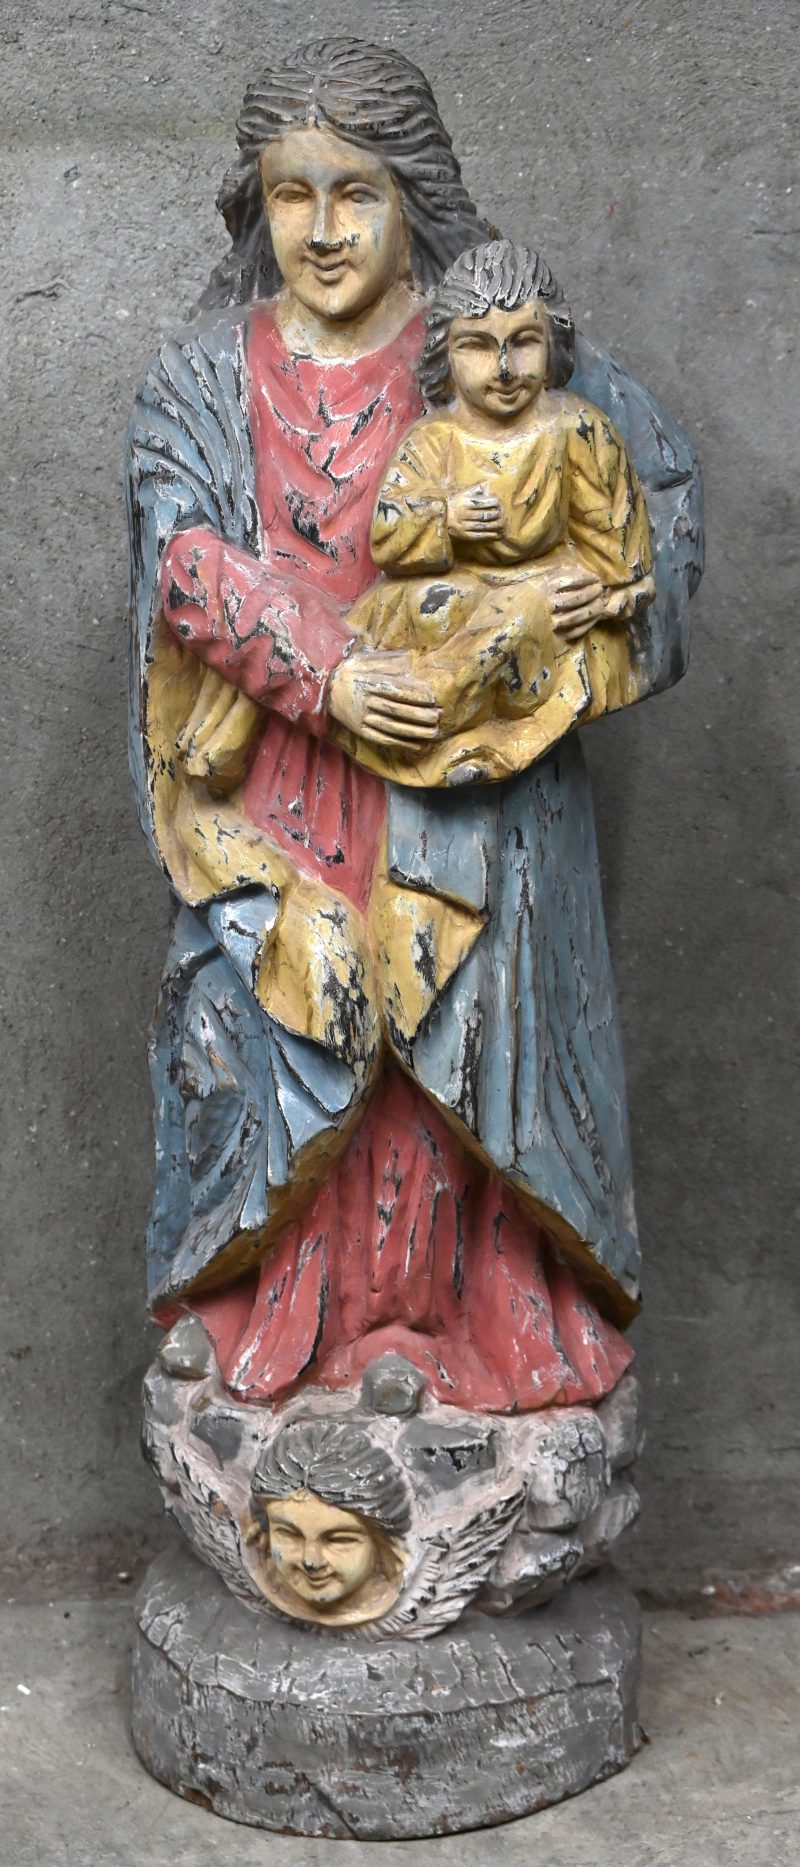 Een groot polychroom houtgesculpteerd beeld van de heilige moeder met haar zoon op de arm. Het beeld heeft een grote barst.